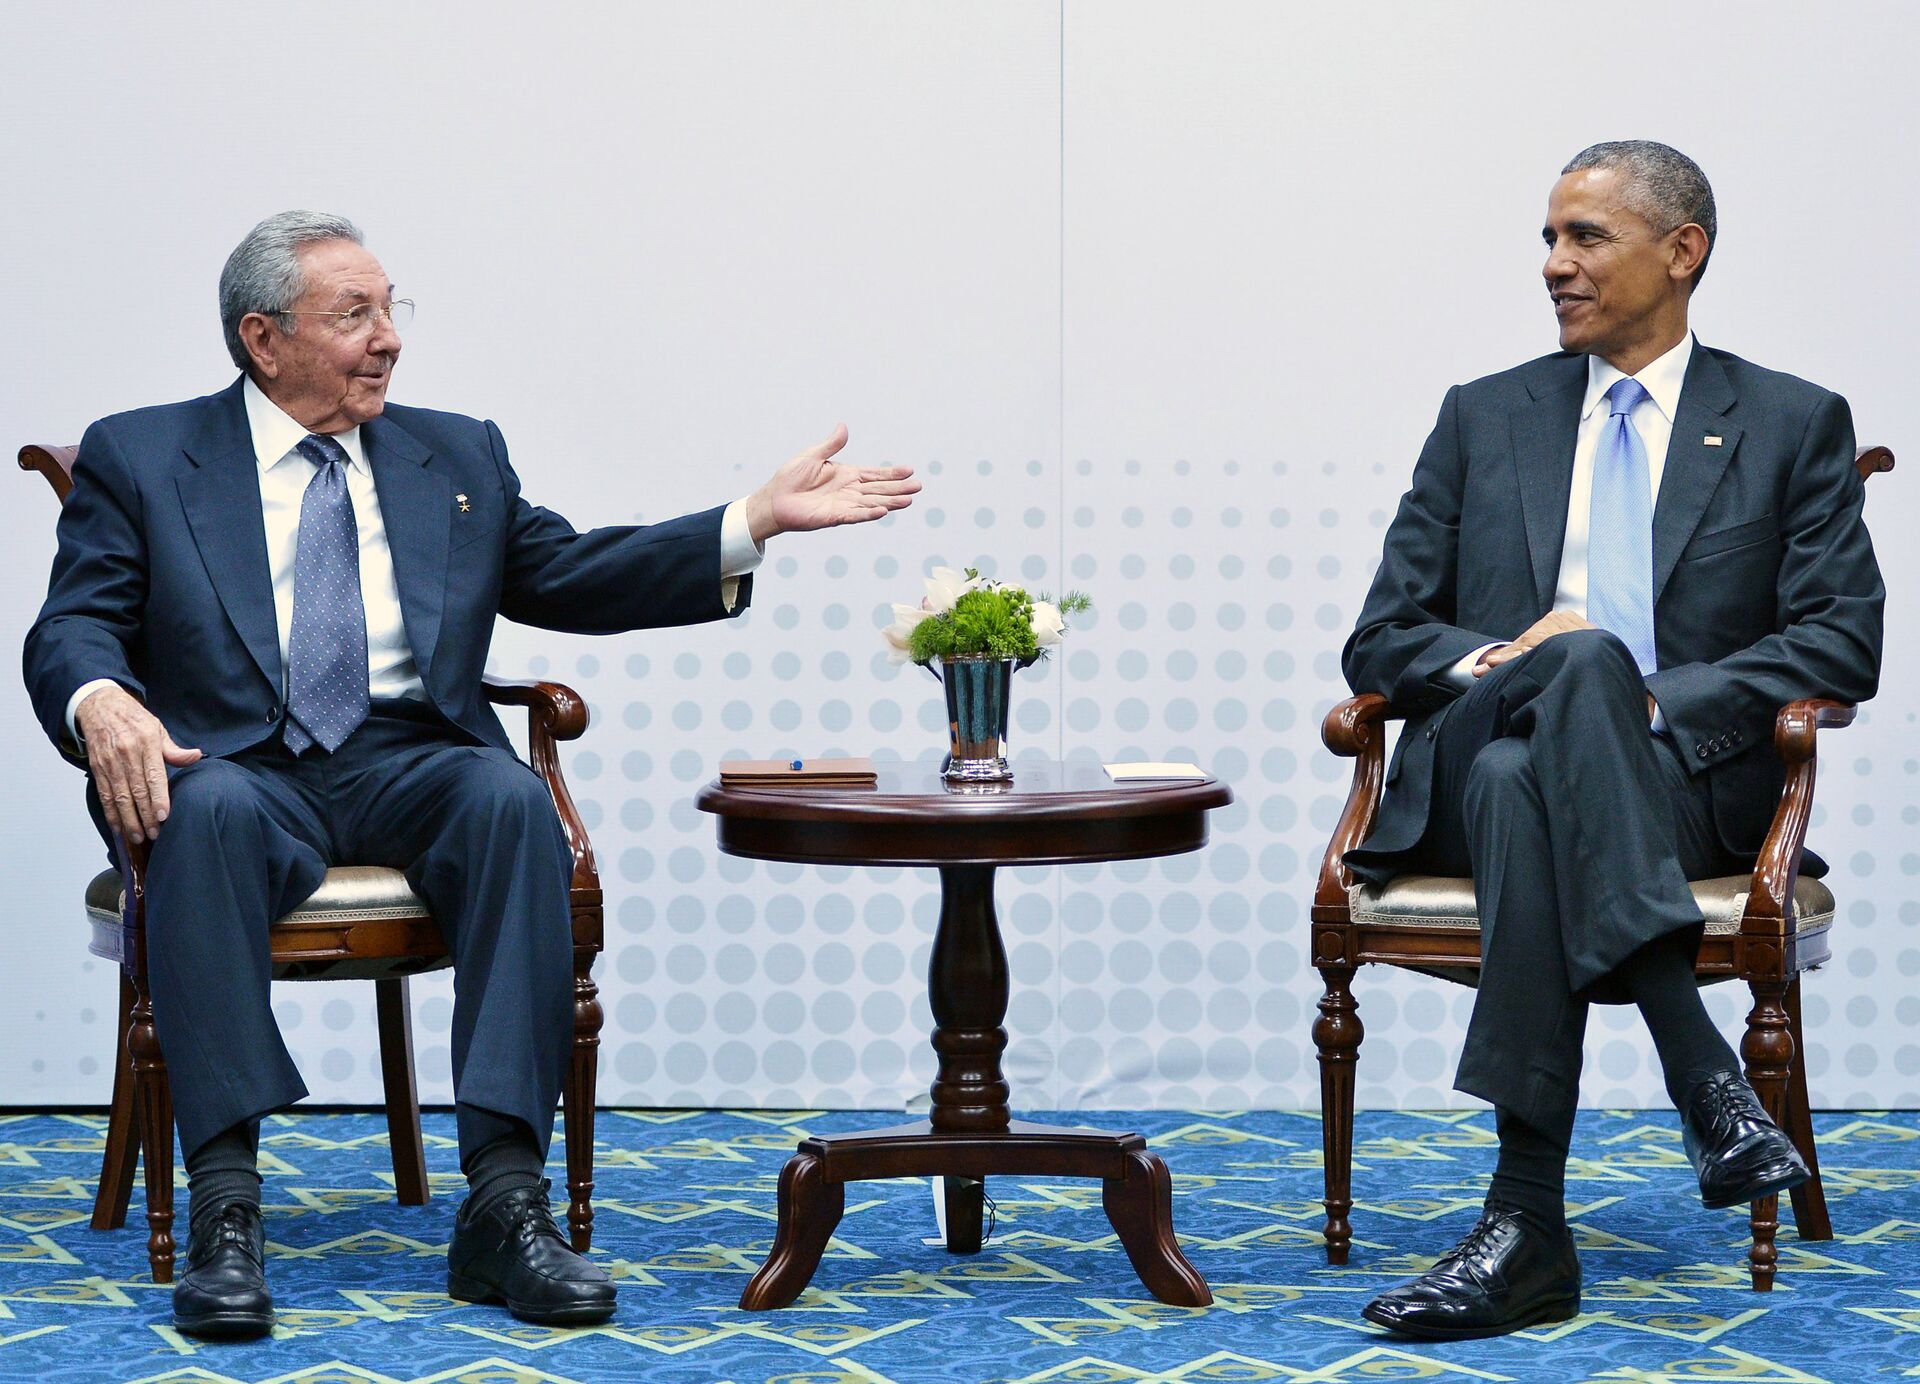 Presidentes de Cuba (Raúl Castro) e Estados Unidos (Barack Obama) se encontraram durante a  7ª Cúpula das Américas, realizada em abril, no Panamá - Sputnik Brasil, 1920, 19.05.2022